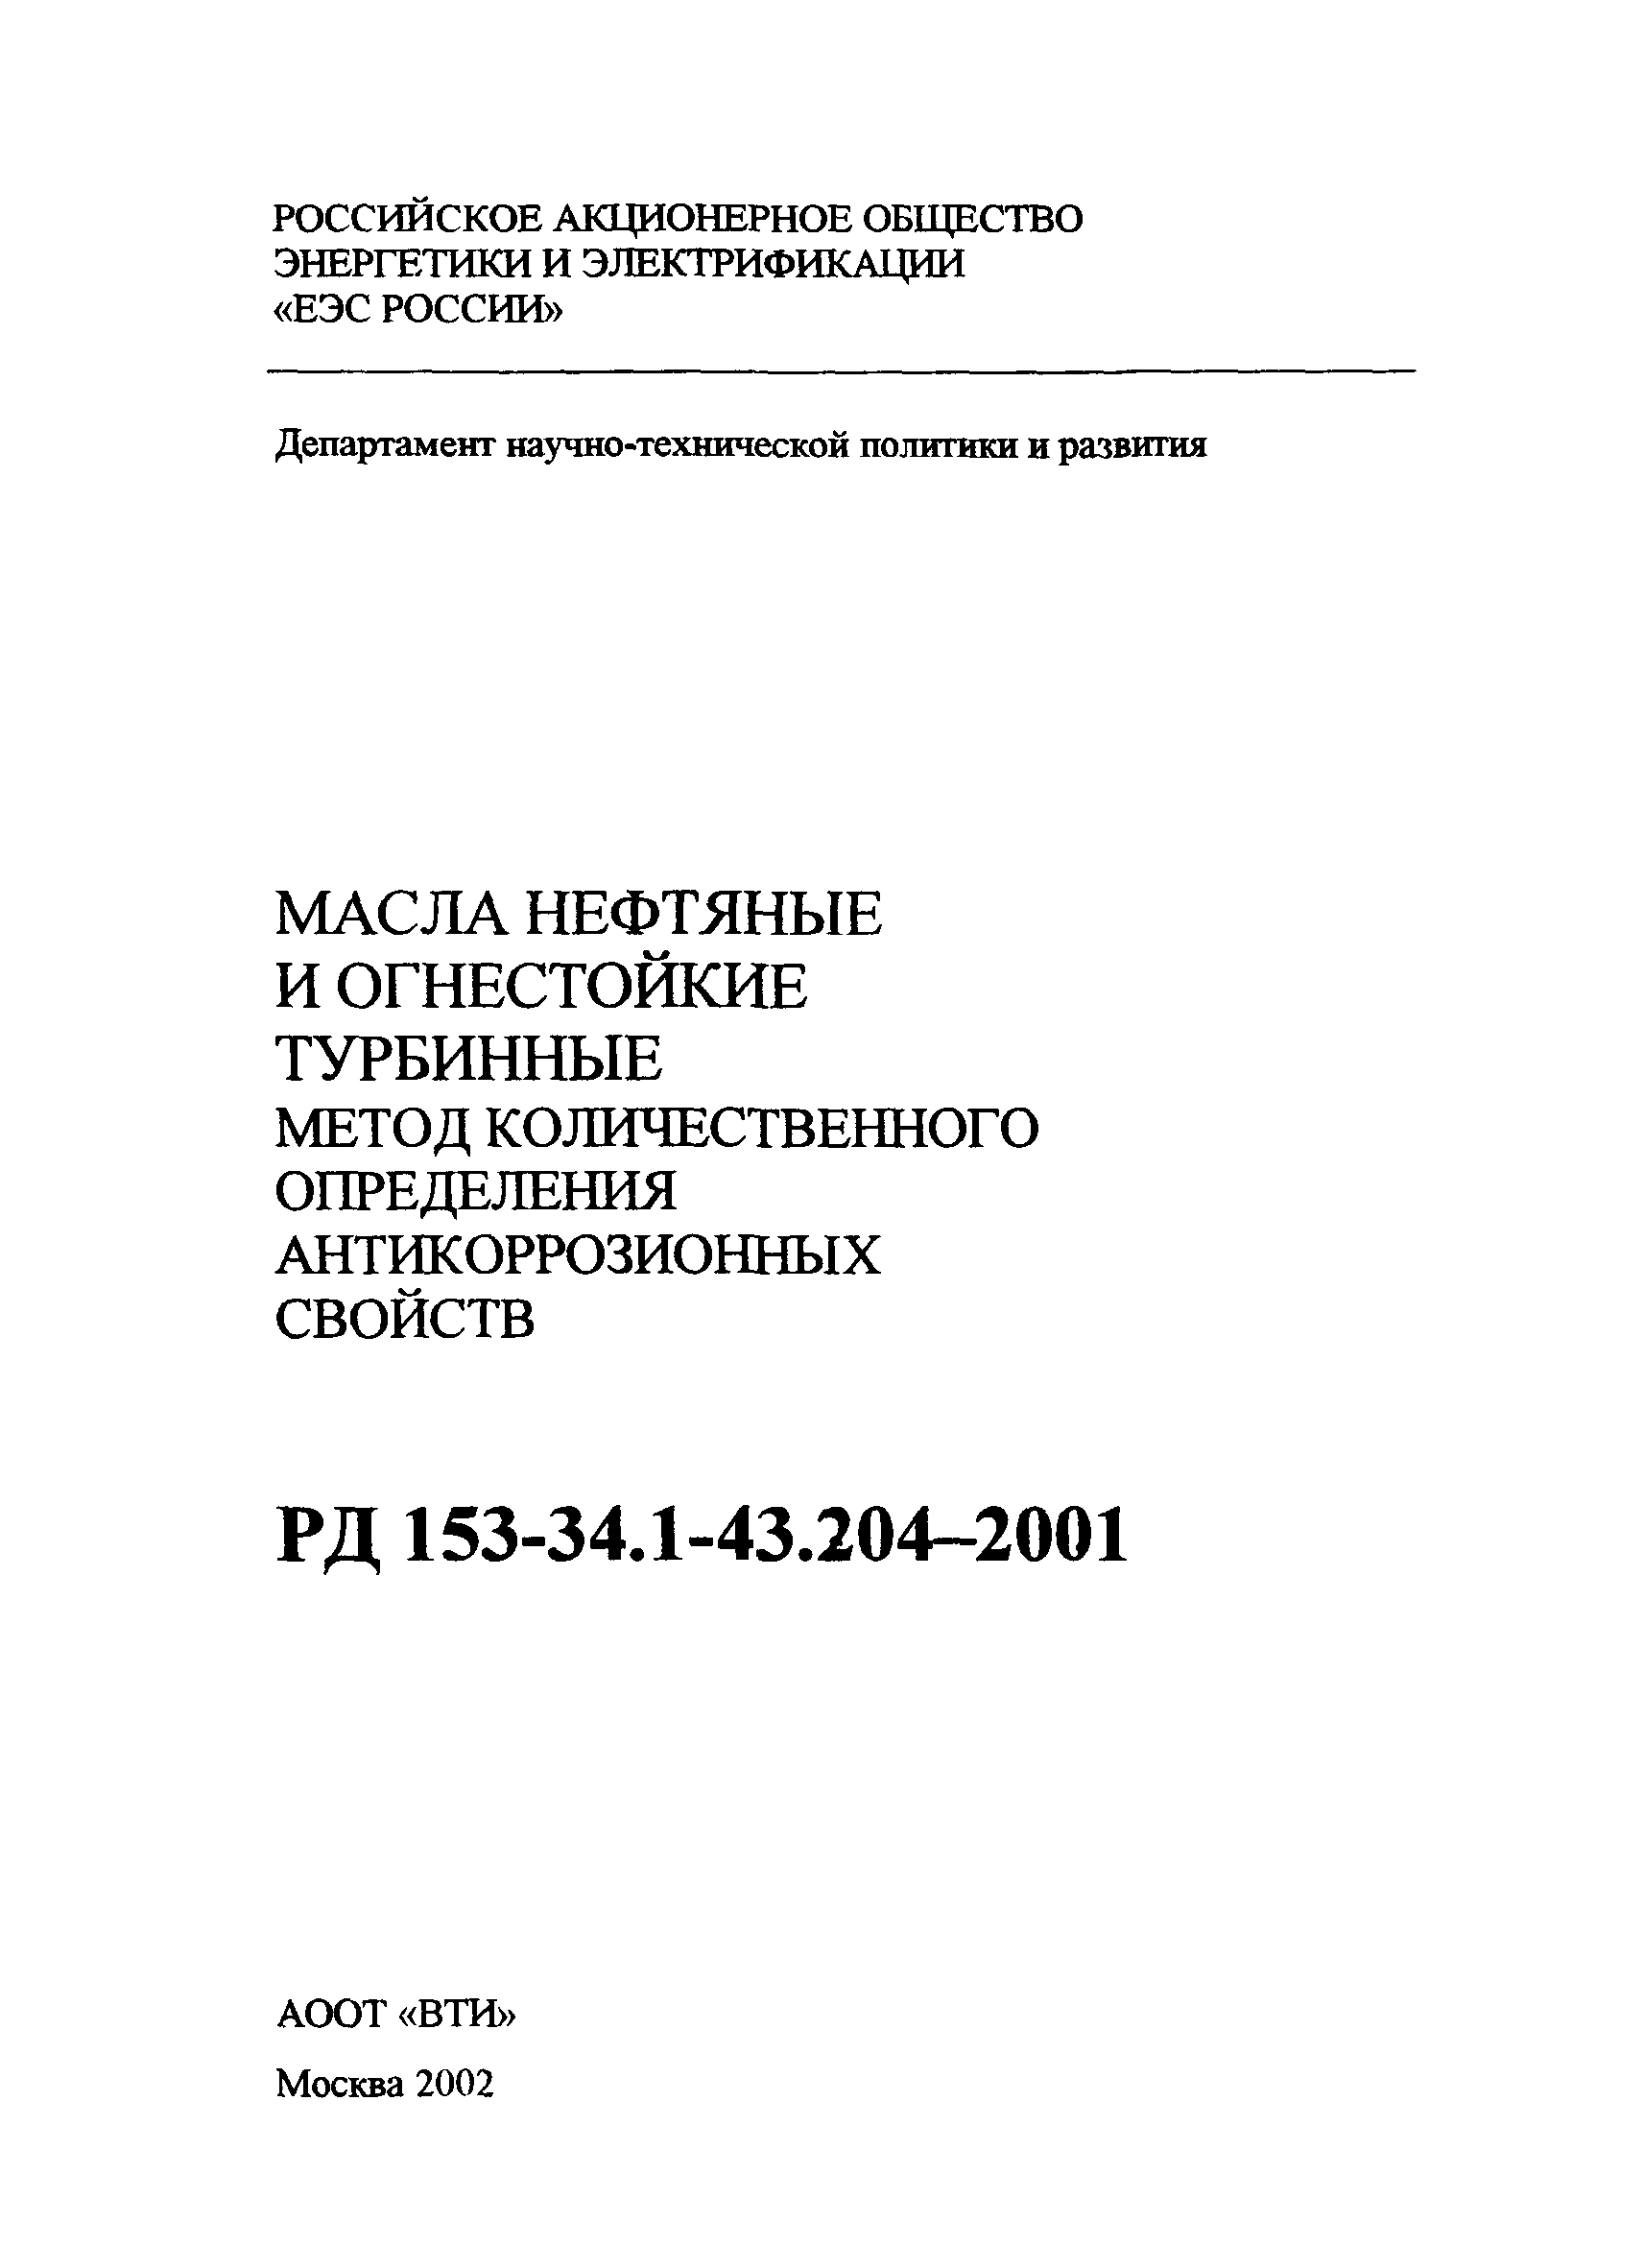 РД 153-34.1-43.204-2001